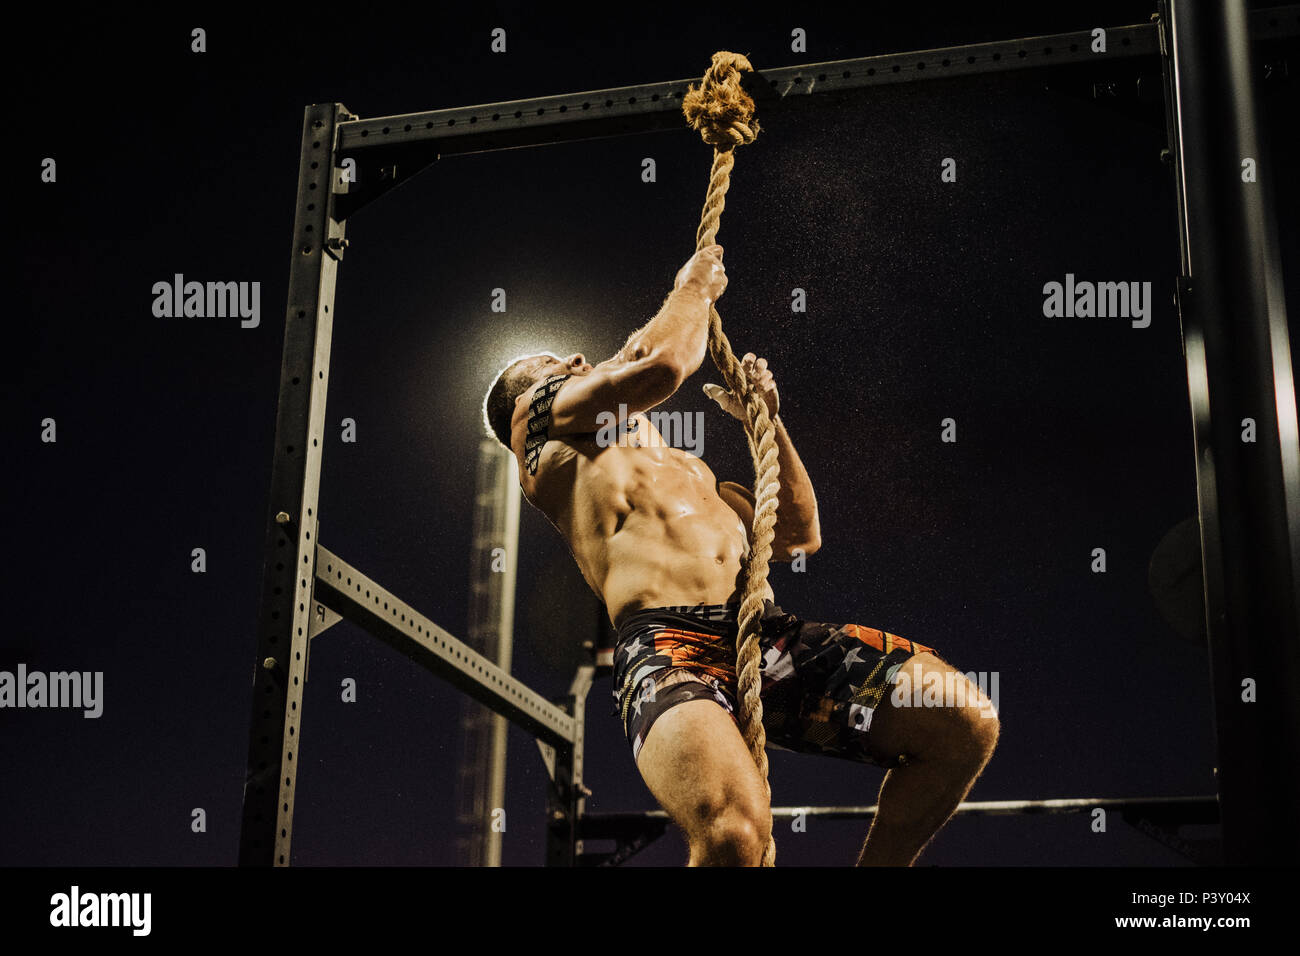 Una notte di tempo scatta di un atleta crossfit salendo su una fune Foto Stock